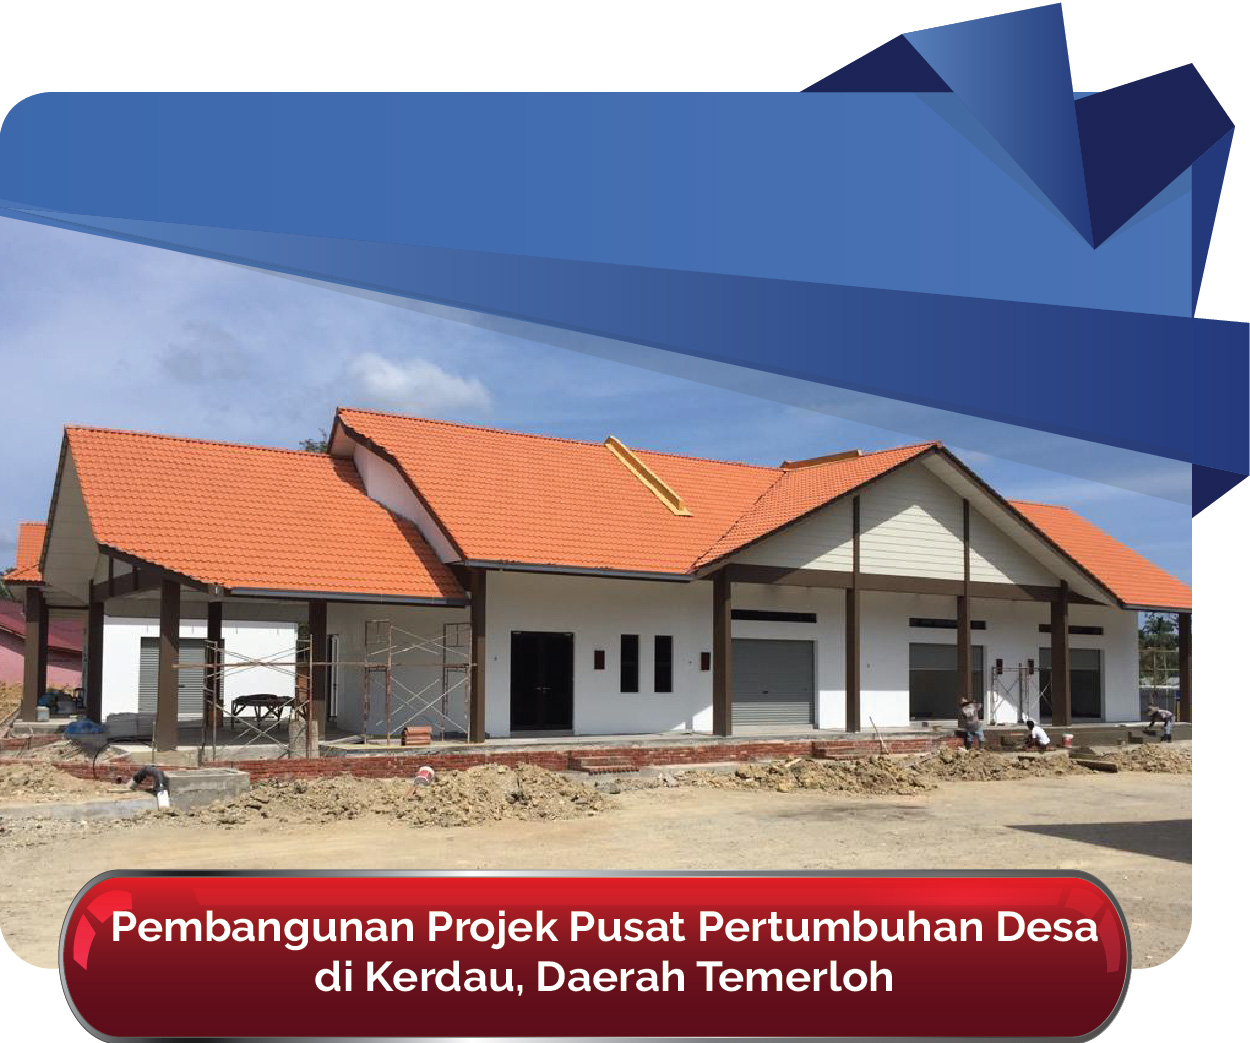 newPembangunan Projek Pusat Pertumbuhan Desa di Kerdau Daerah Temerloh 01 01